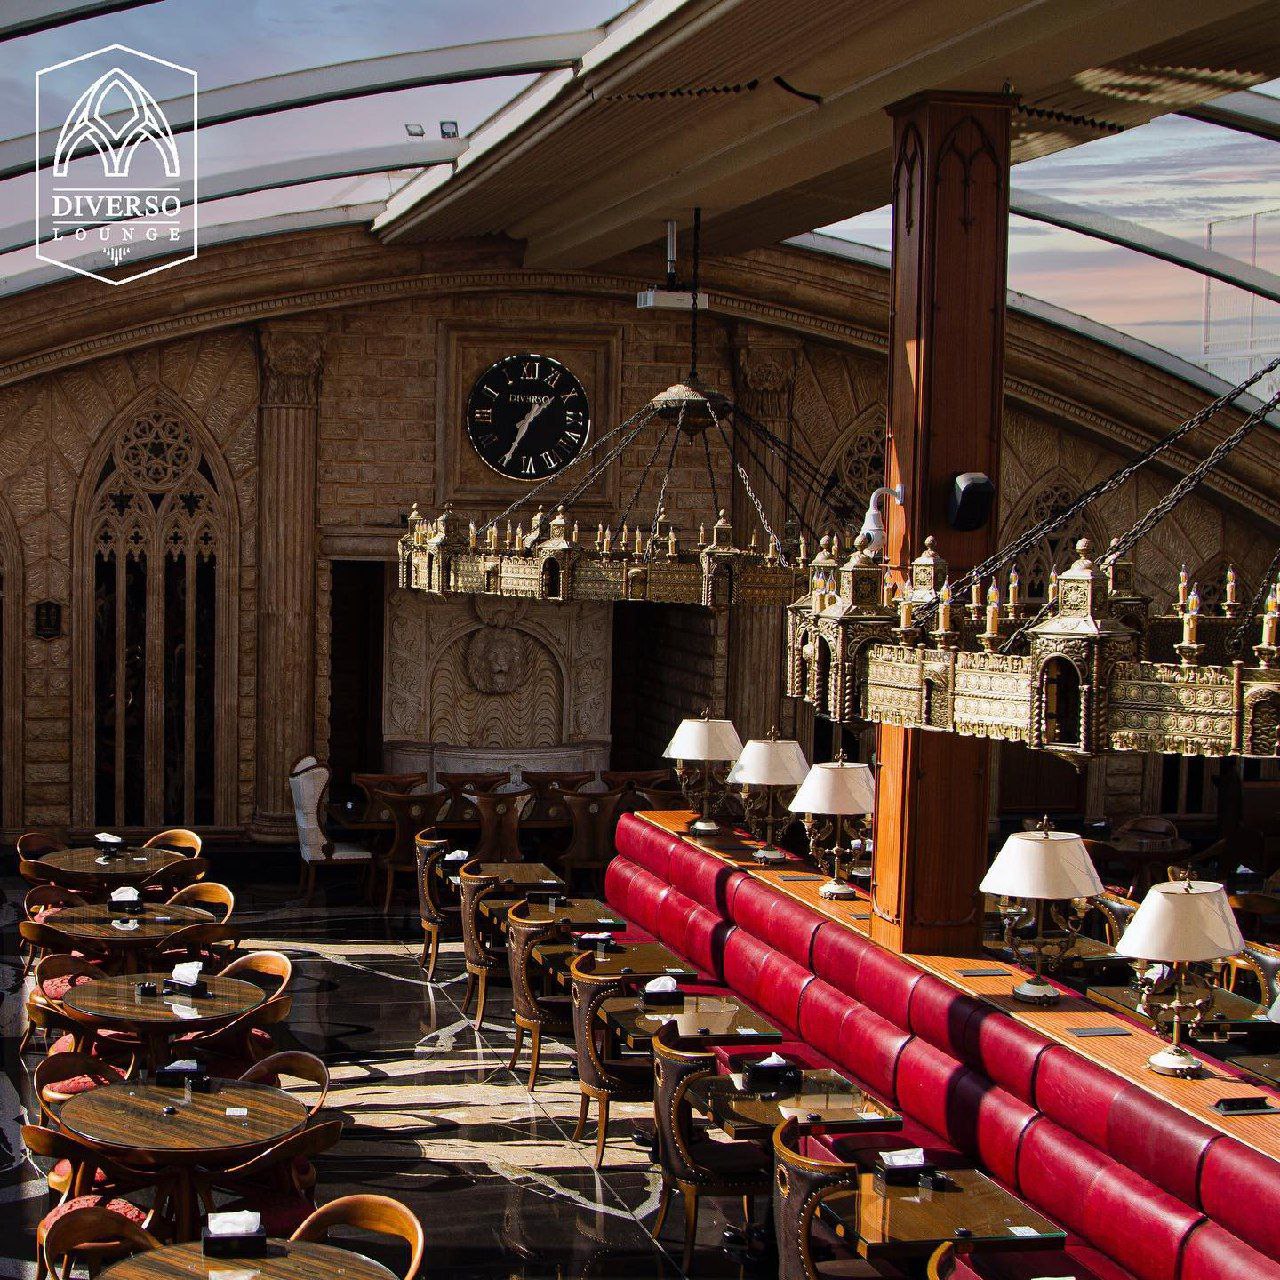 رستوران دیورسو،زیباترین رستوران در تهران